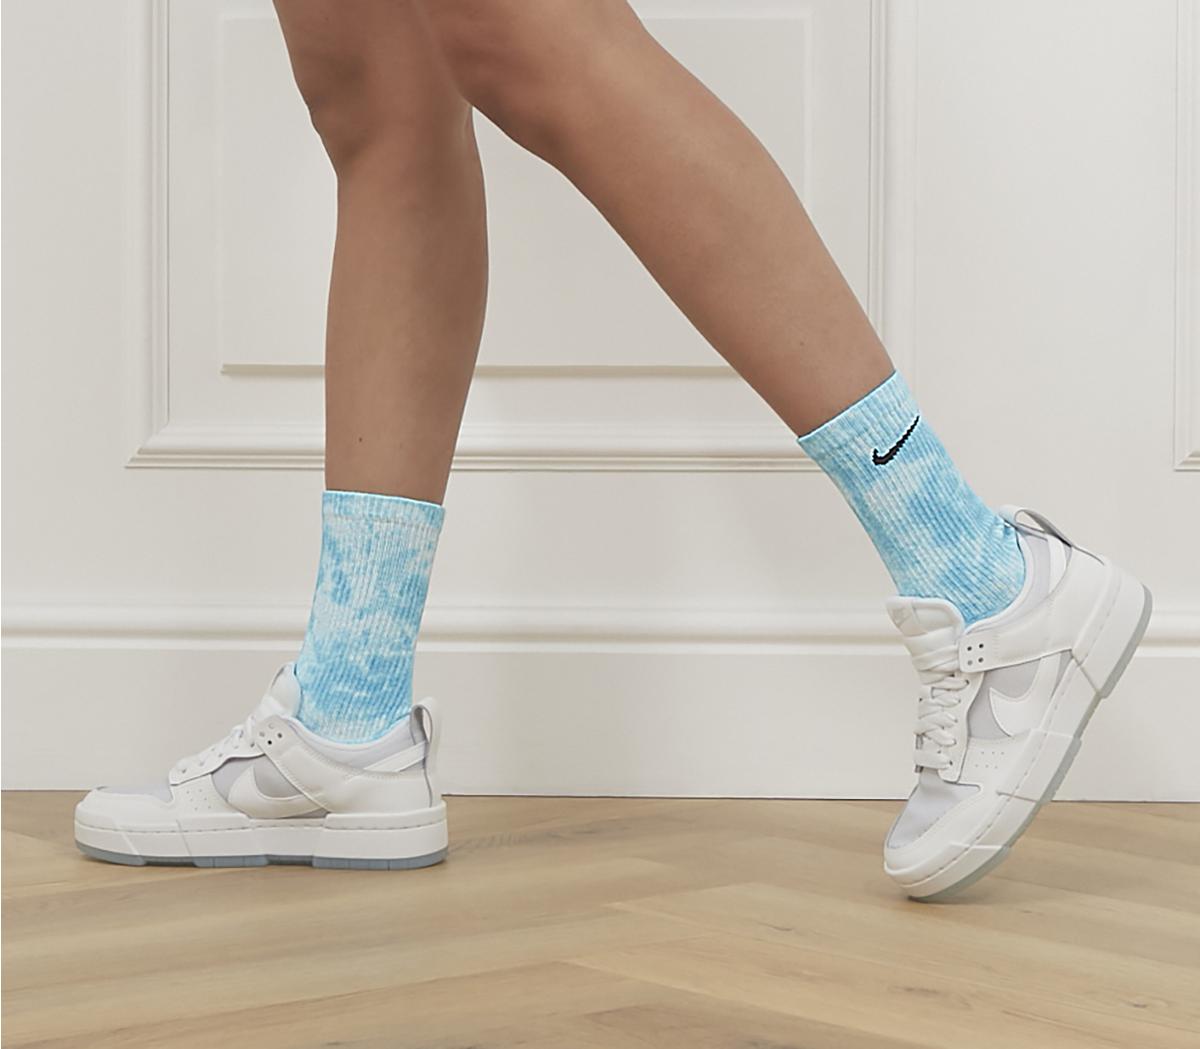 NikeEveryday Plush Crew Tie-Dye Socks 2 PackBlue Multi